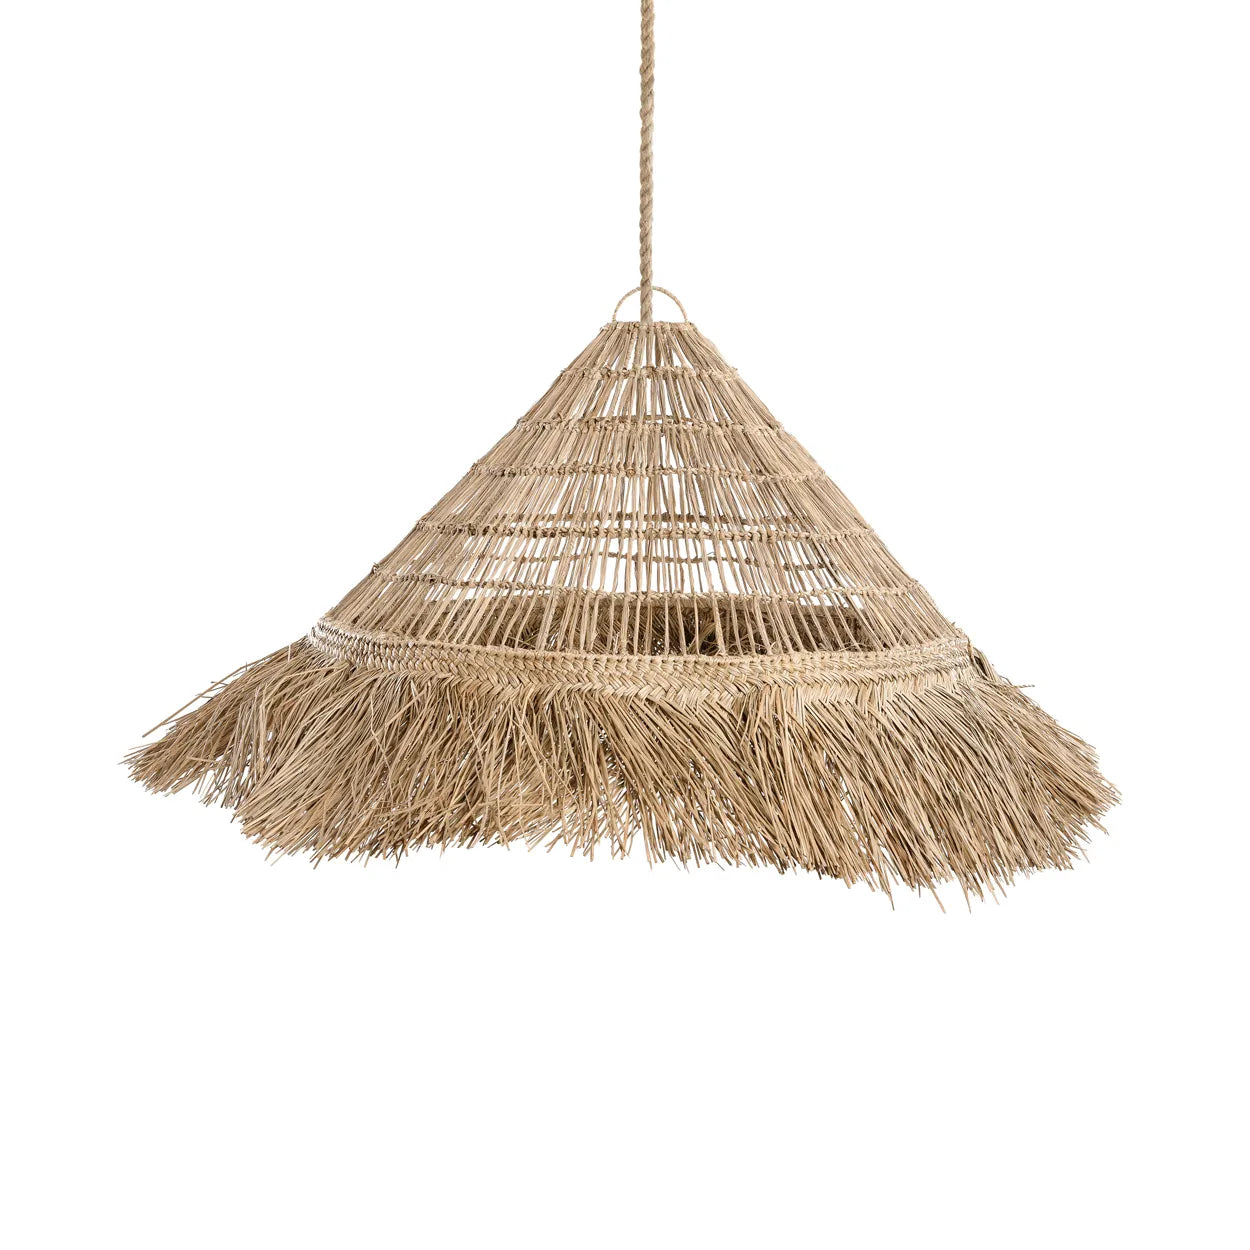 Altea Pendant Light - Handmade Mendong Grass Lamp Shade